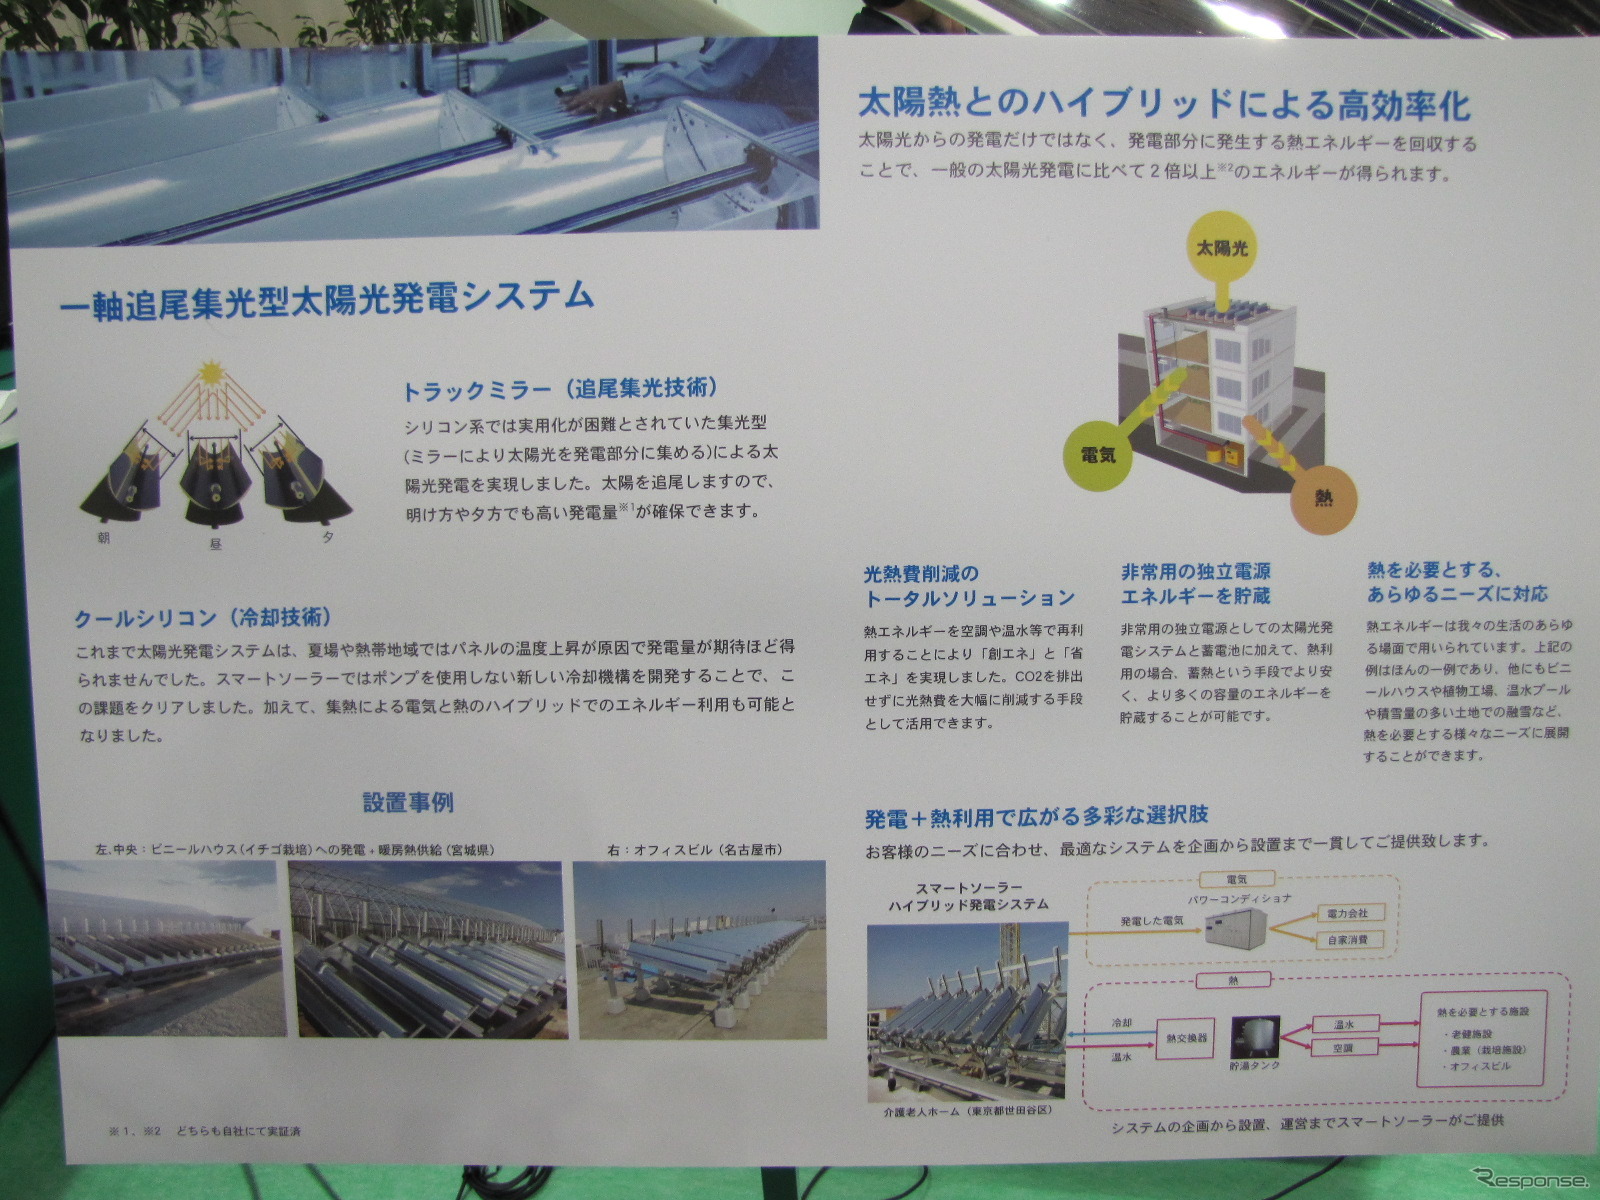 エコプロダクツ2012スマートソーラーインターナショナルのハイブリッド型太陽光発電システム